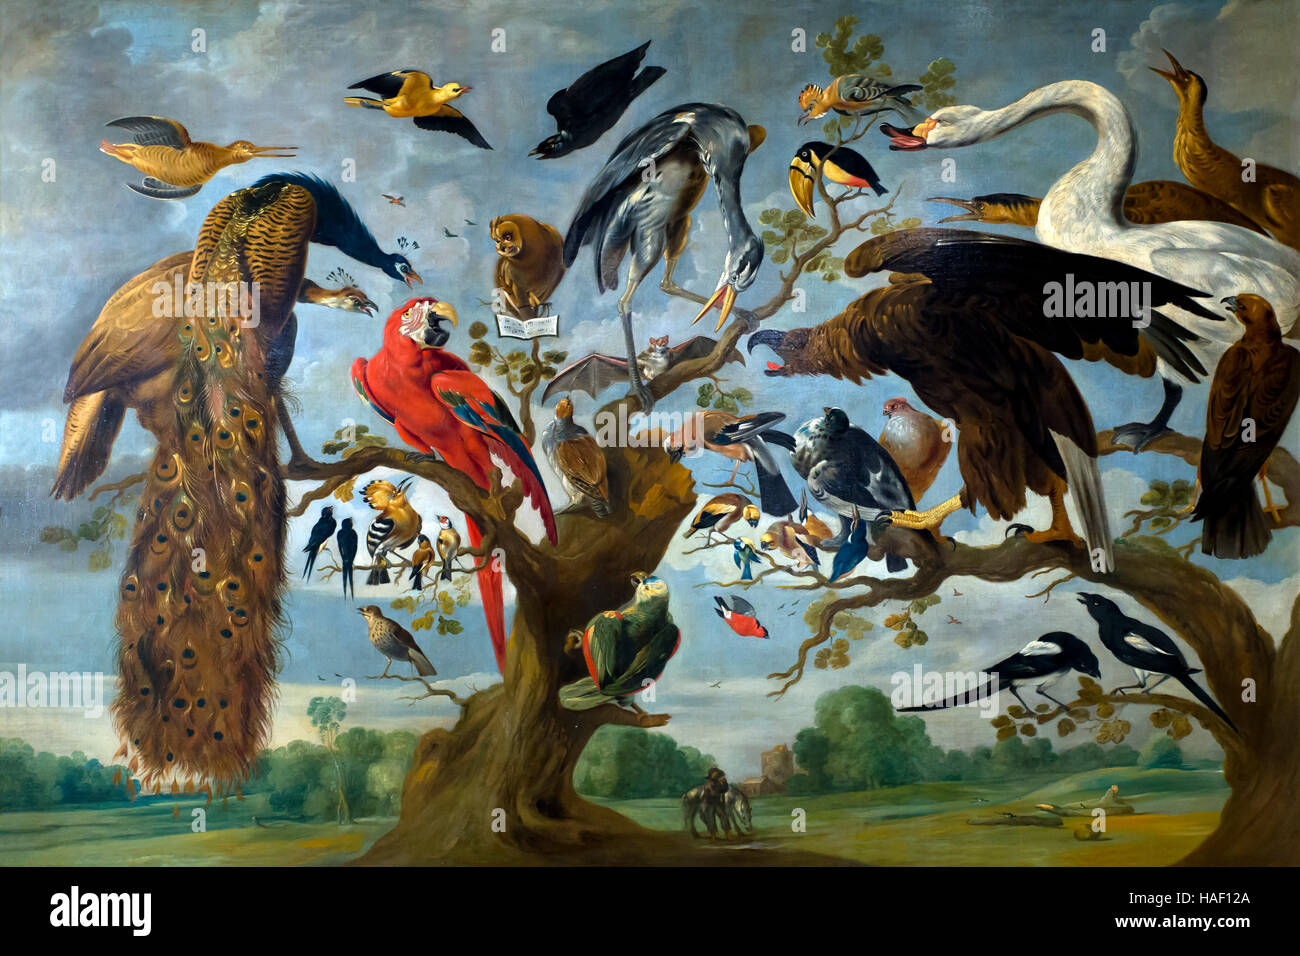 Les concerts d'oiseaux, attribué à Paul de Vos, 17e siècle, Musée Royal des Beaux-Arts, Anvers, Belgique, Europe Banque D'Images